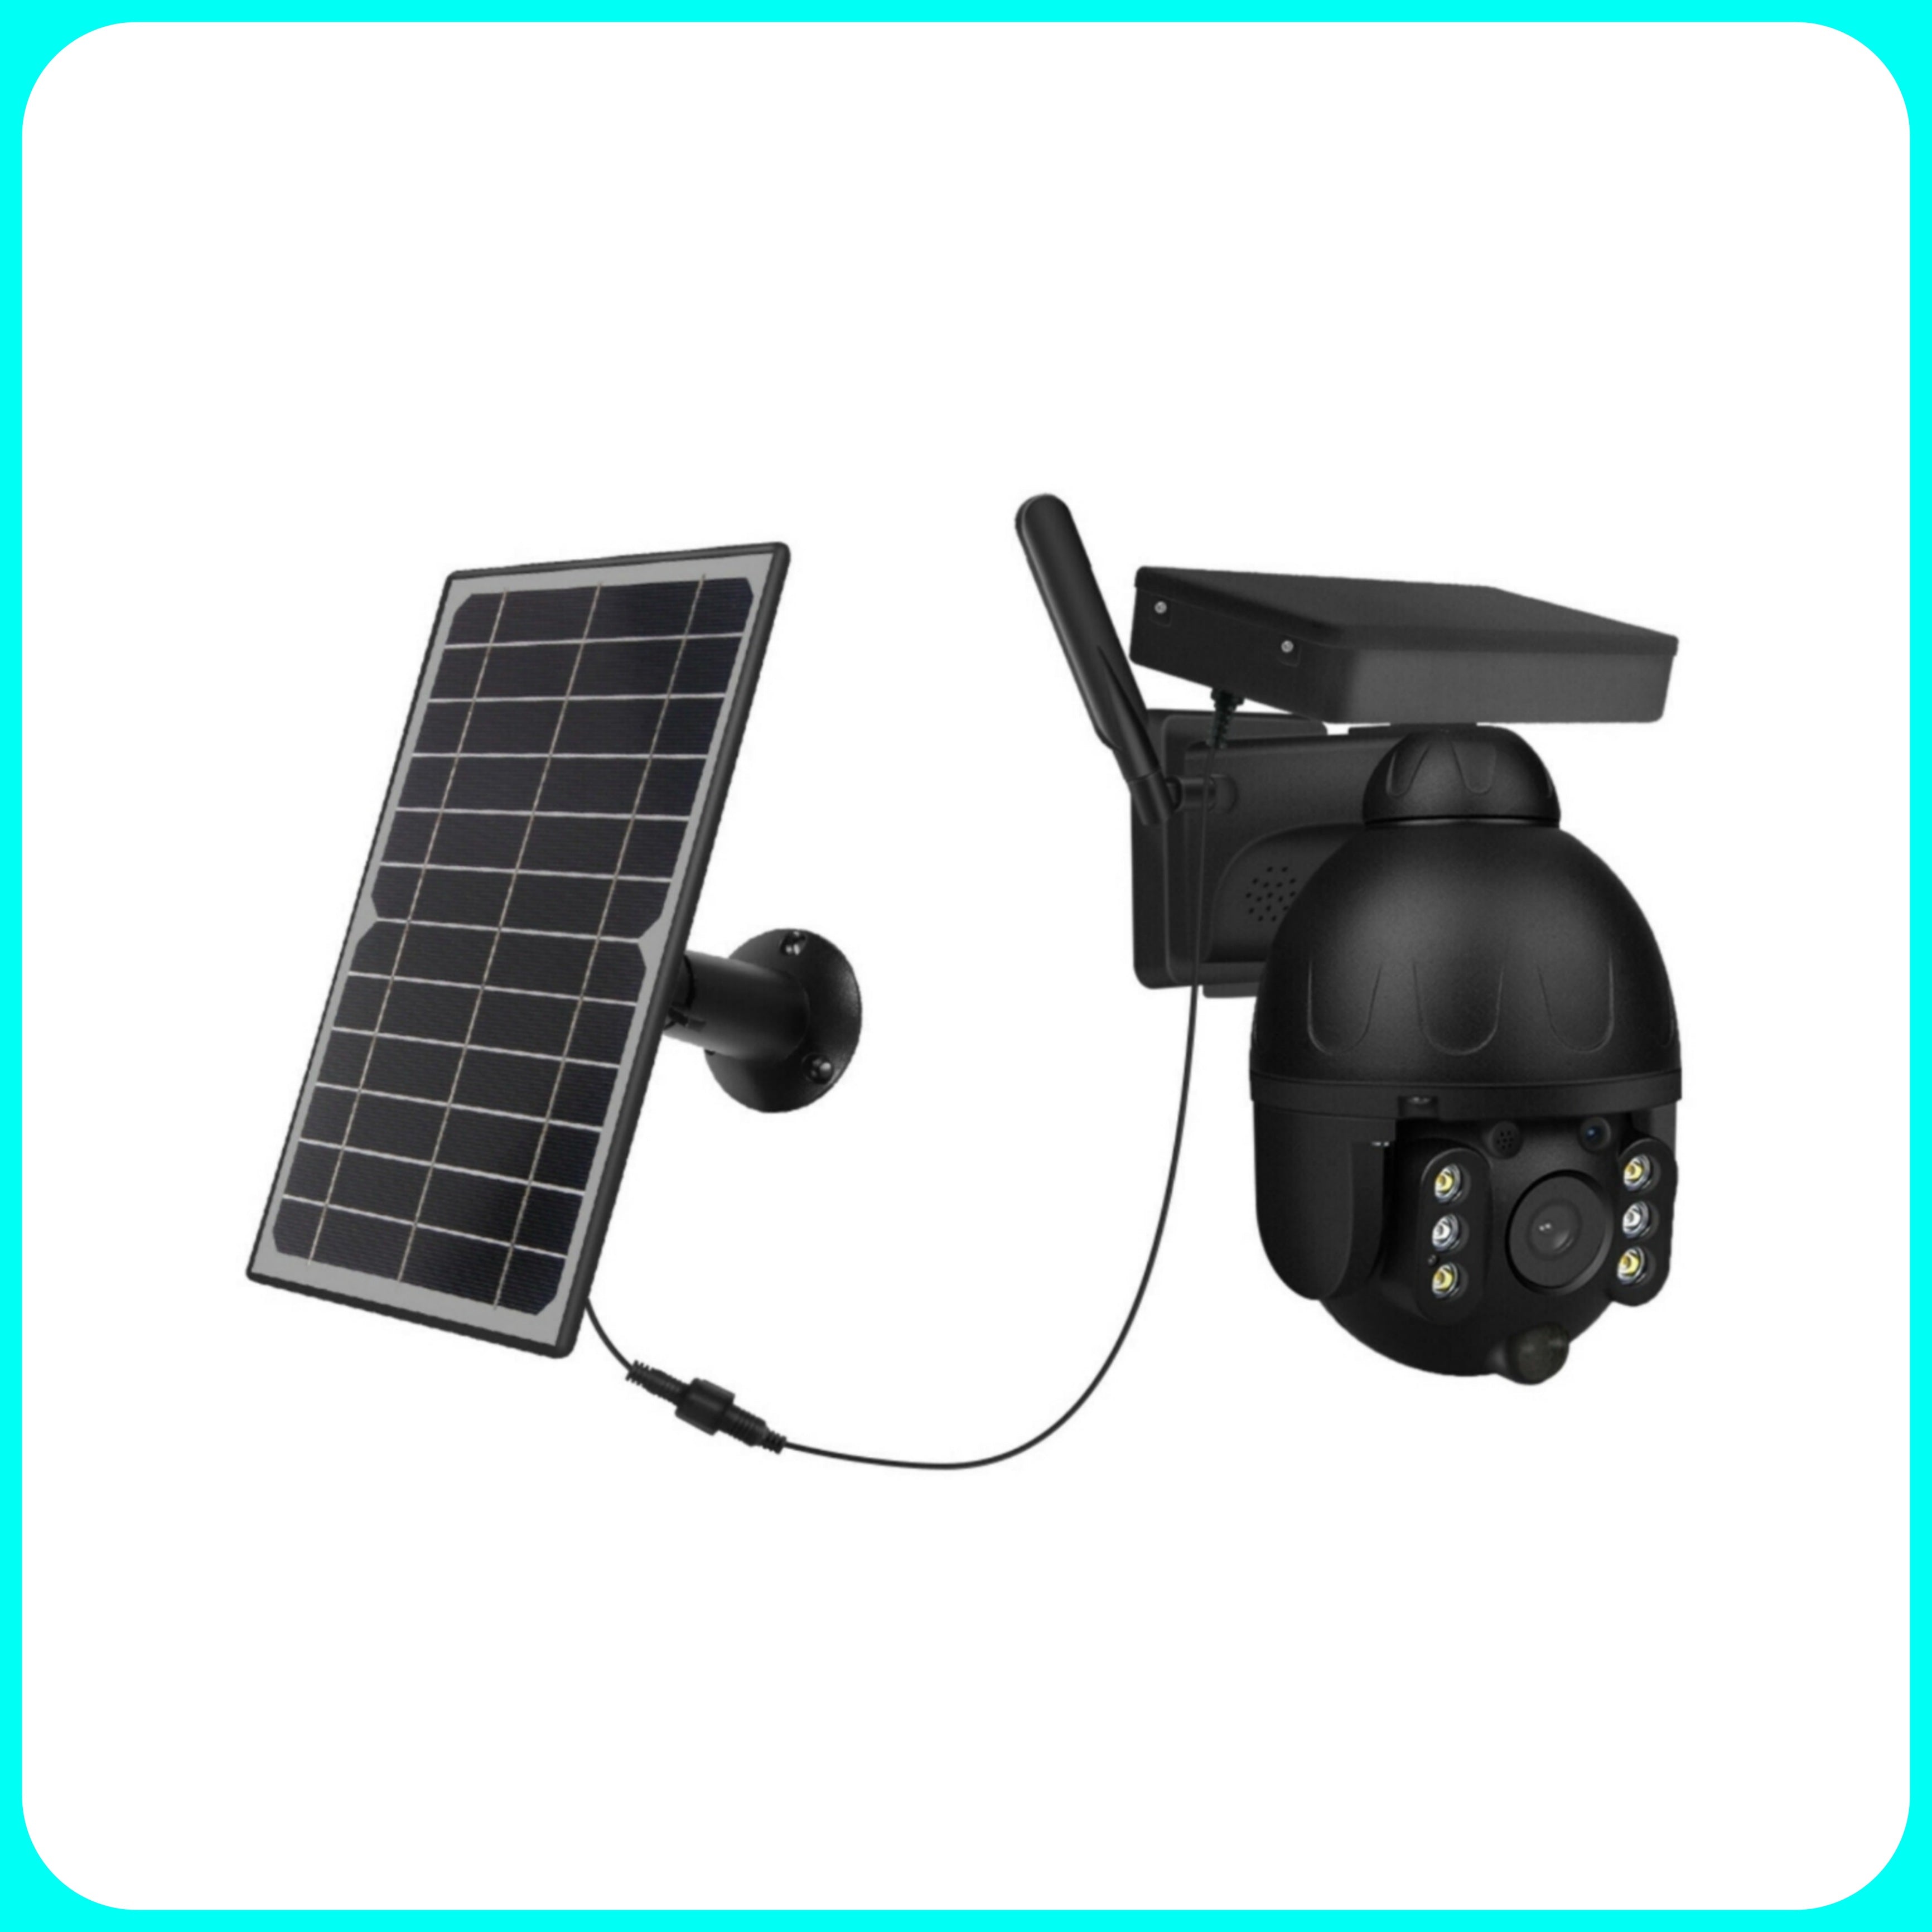 Telecamera con Pannello Solare - Da esterno con pannello solare FISSABILE, Wireless, 1080P,  Panoramica, Visione notturna